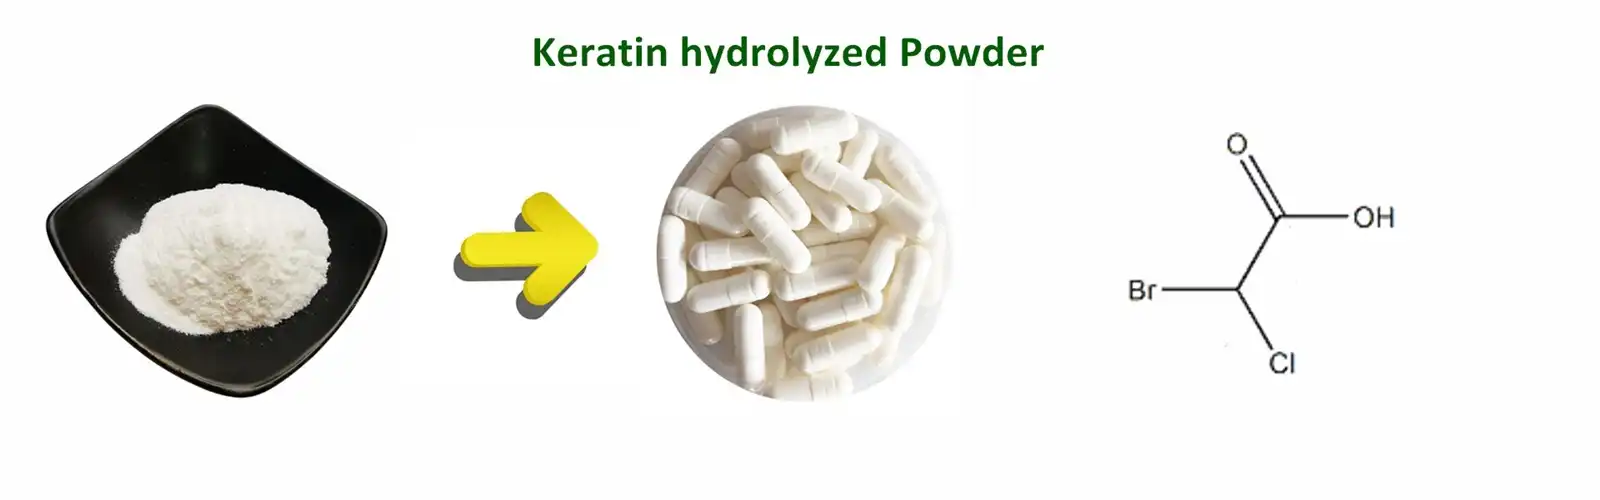 Keratin hydrolyzed Powder